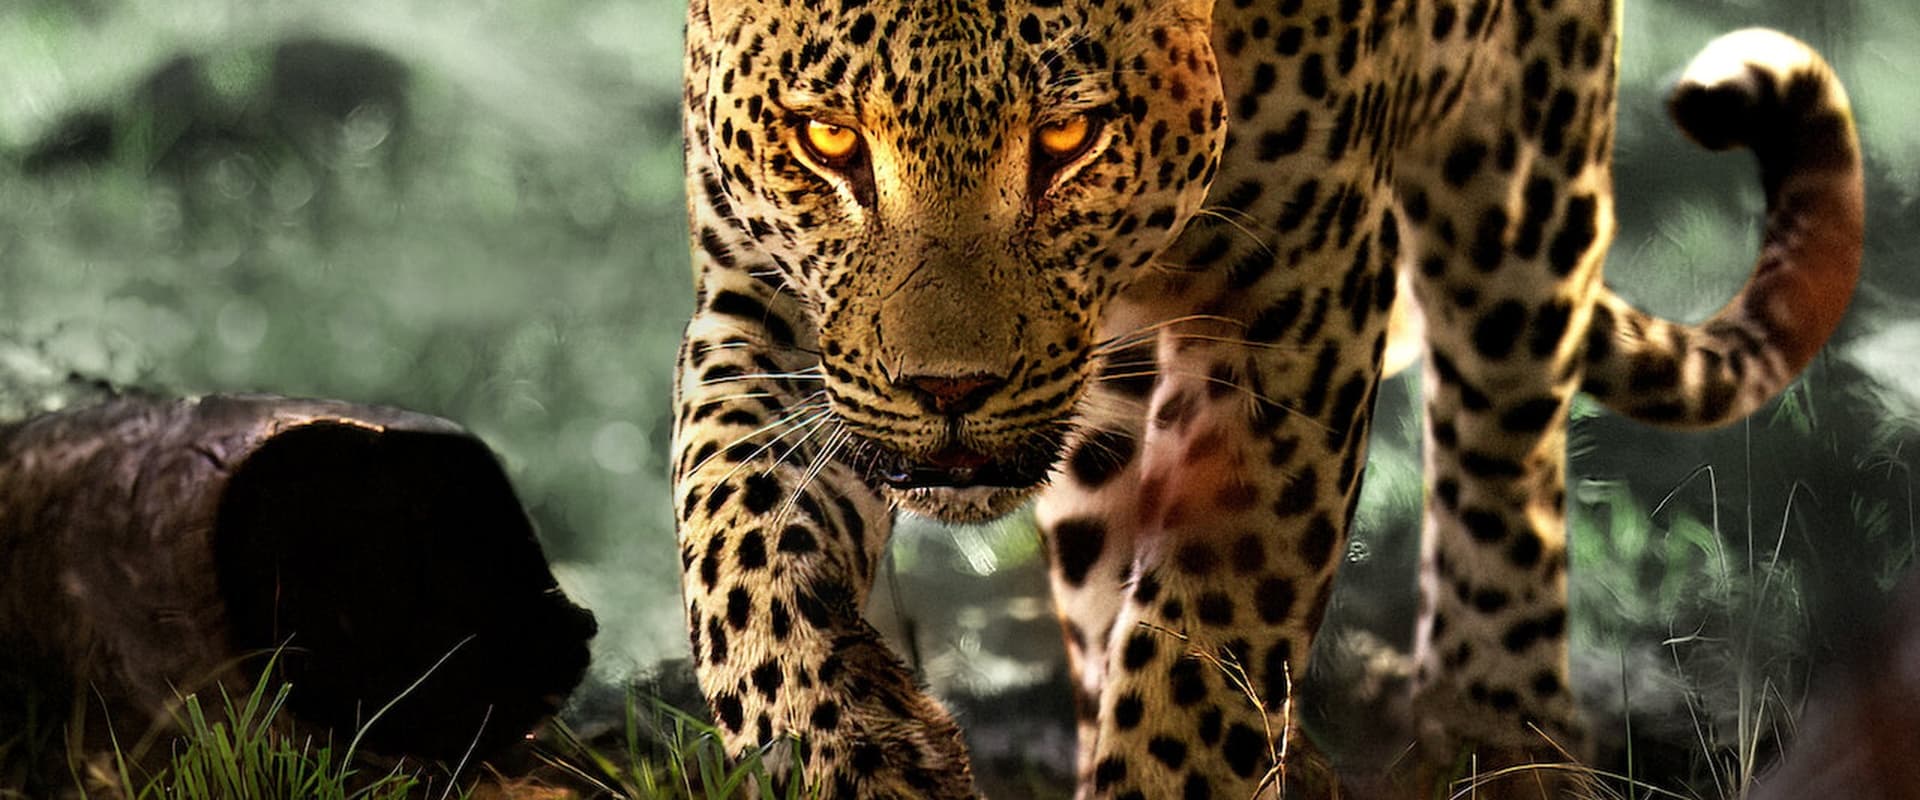 Leben mit Leoparden